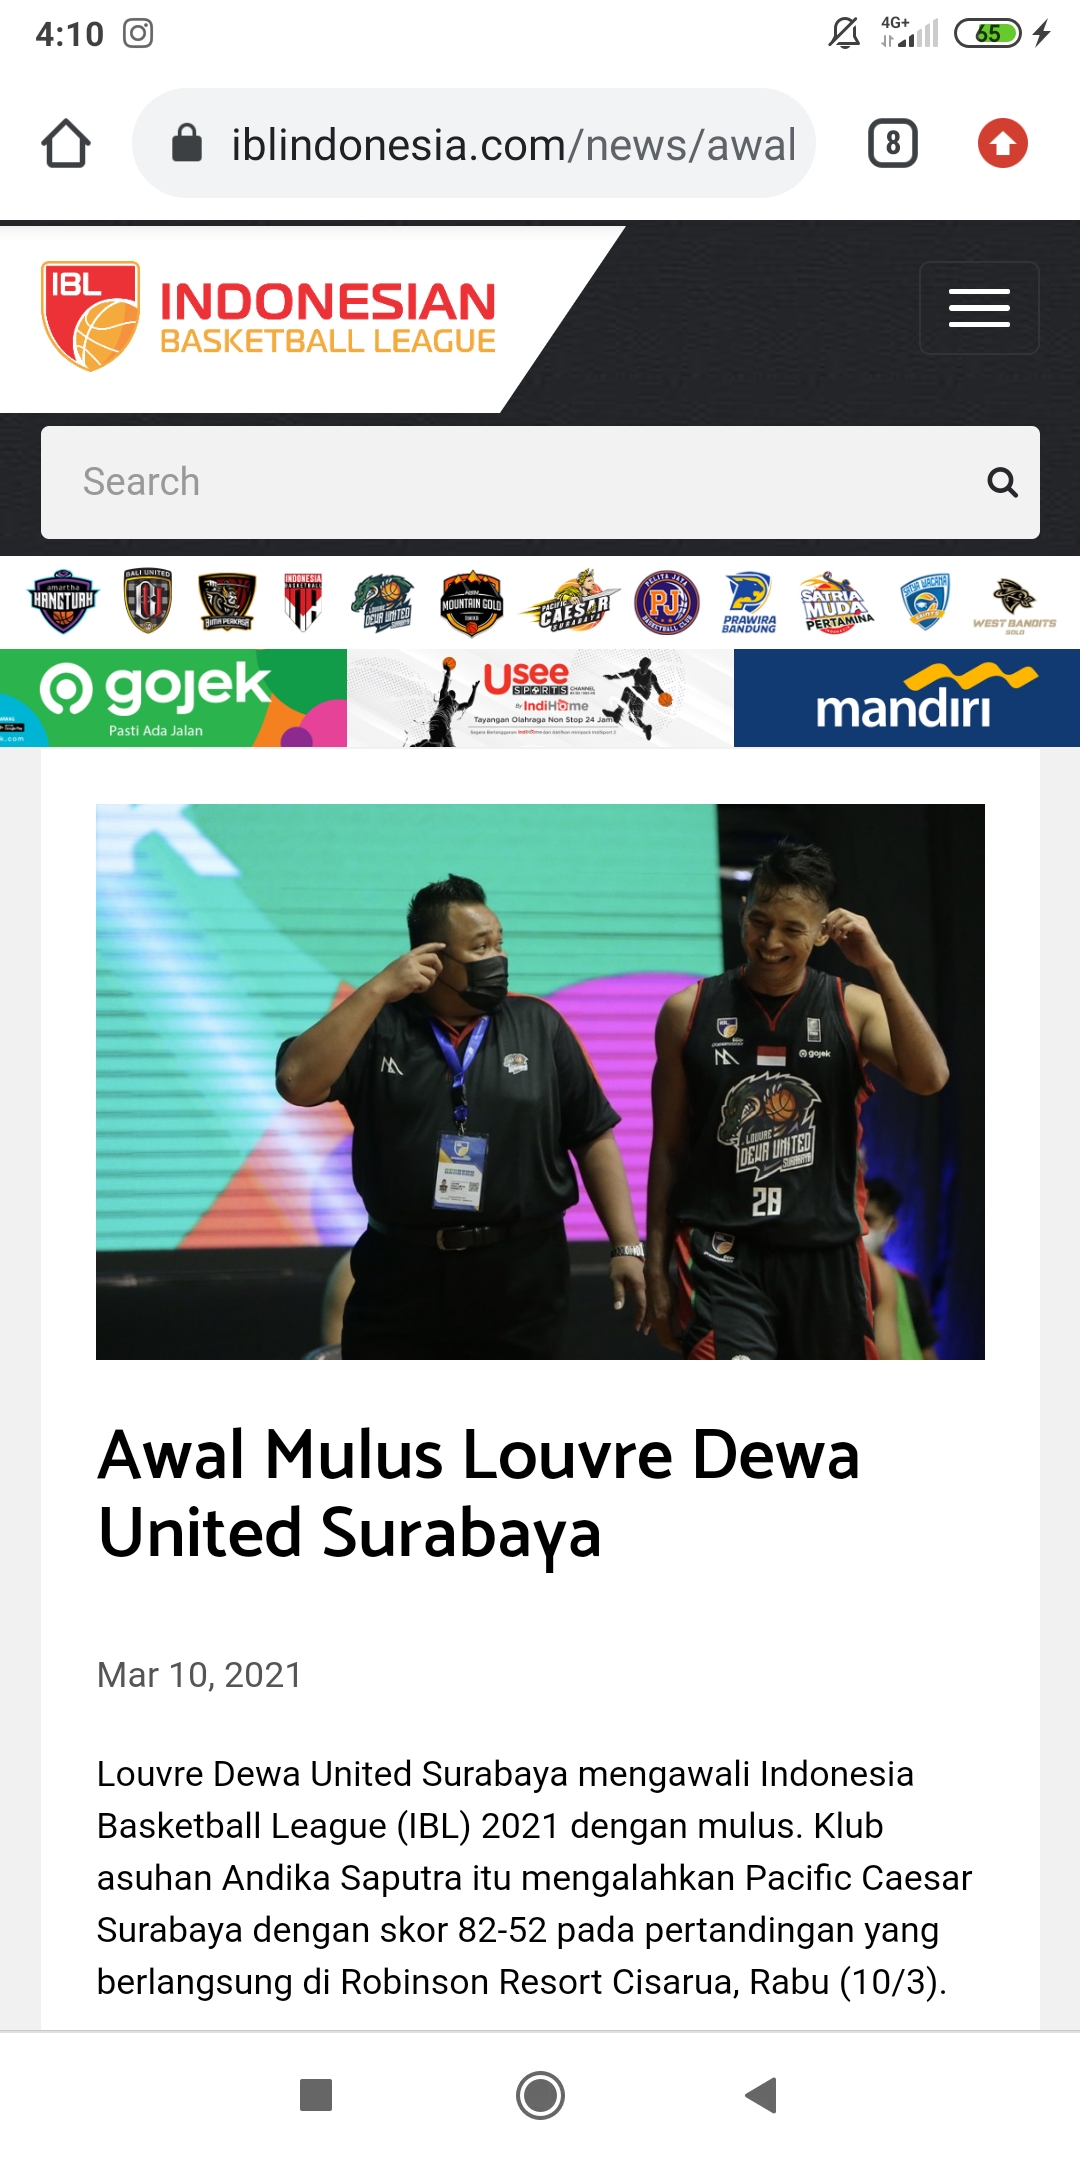 Target Juara IBL 2021, Dewa United Surabaya Siap Perbaiki Skuad dan Berburu Pemain